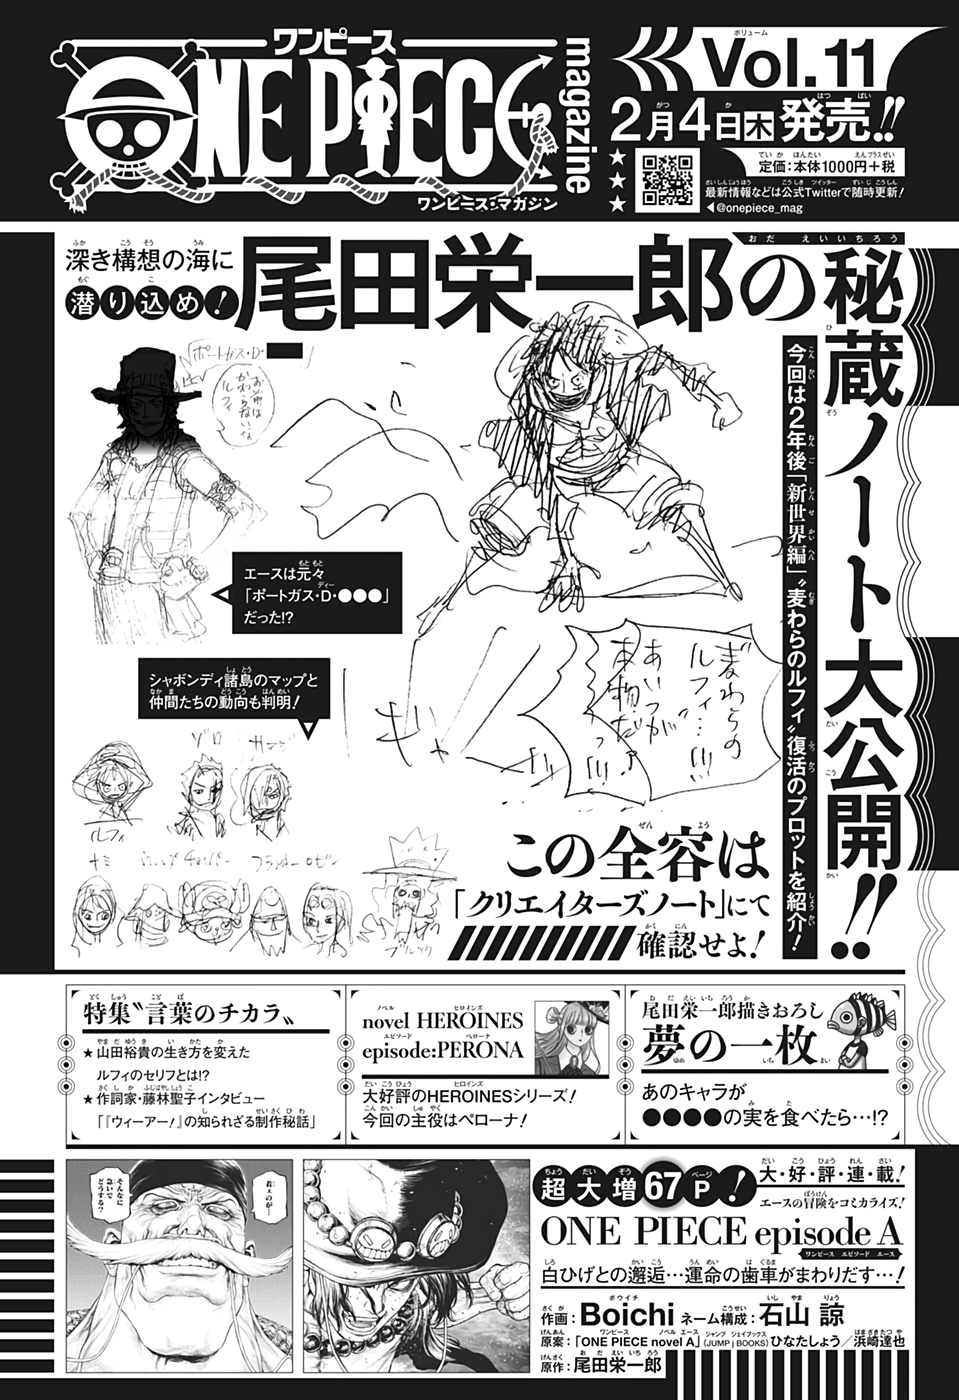 One Piece Magazine Nueva Revista De La Serie Volumen 12 A La Venta El 2 09 21 Pagina 42 Foro De One Piece Pirateking